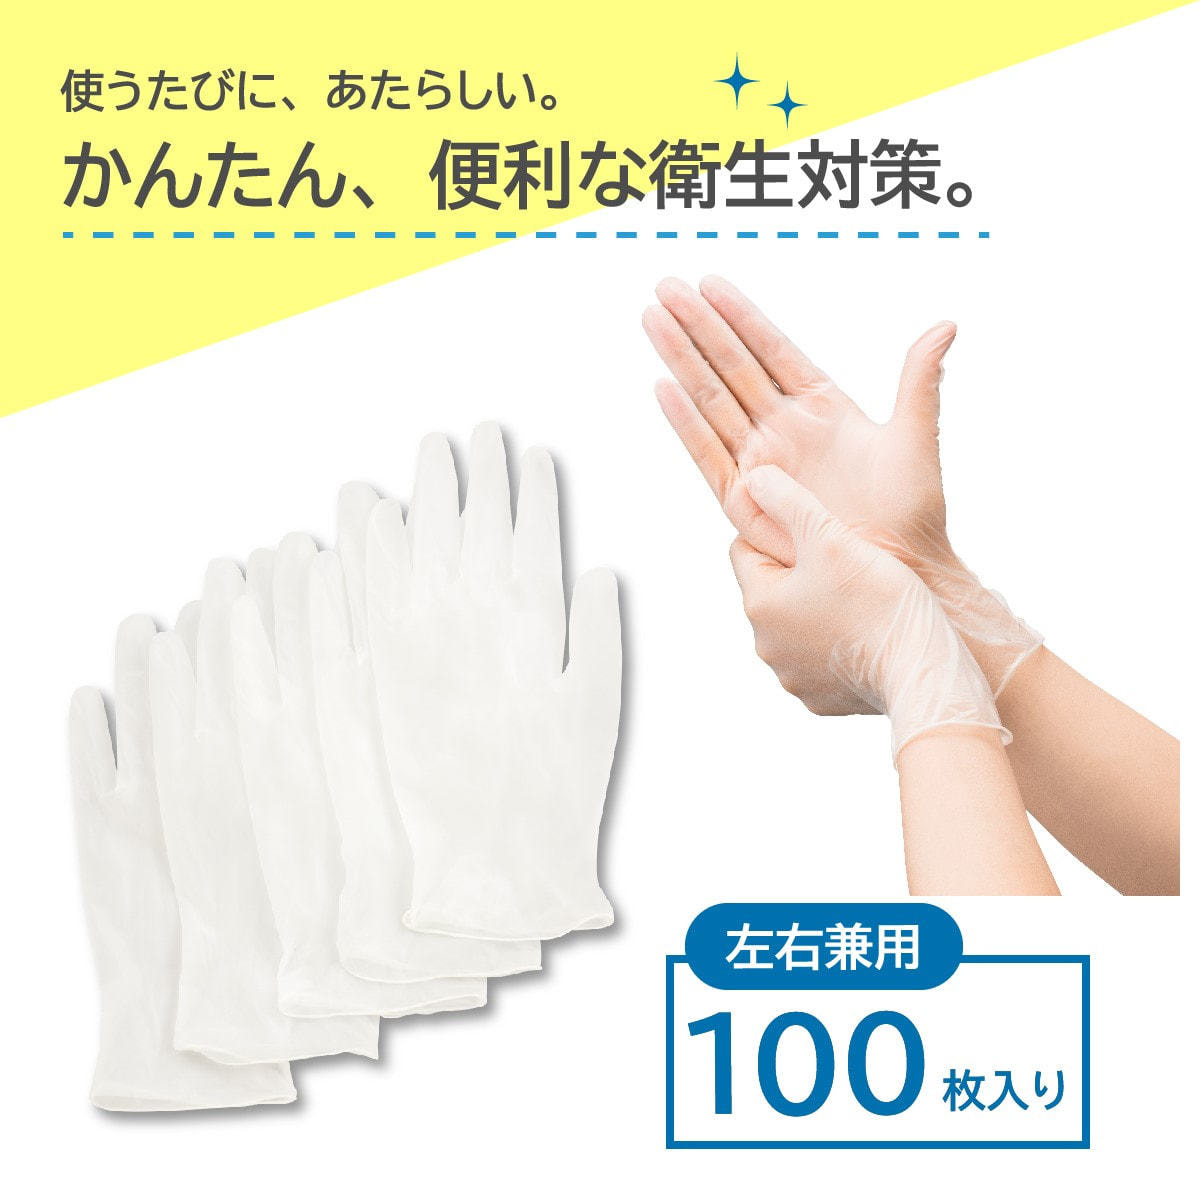 ビニール使い捨て手袋 ナイスハンドきれいな手つかいきりグローブ